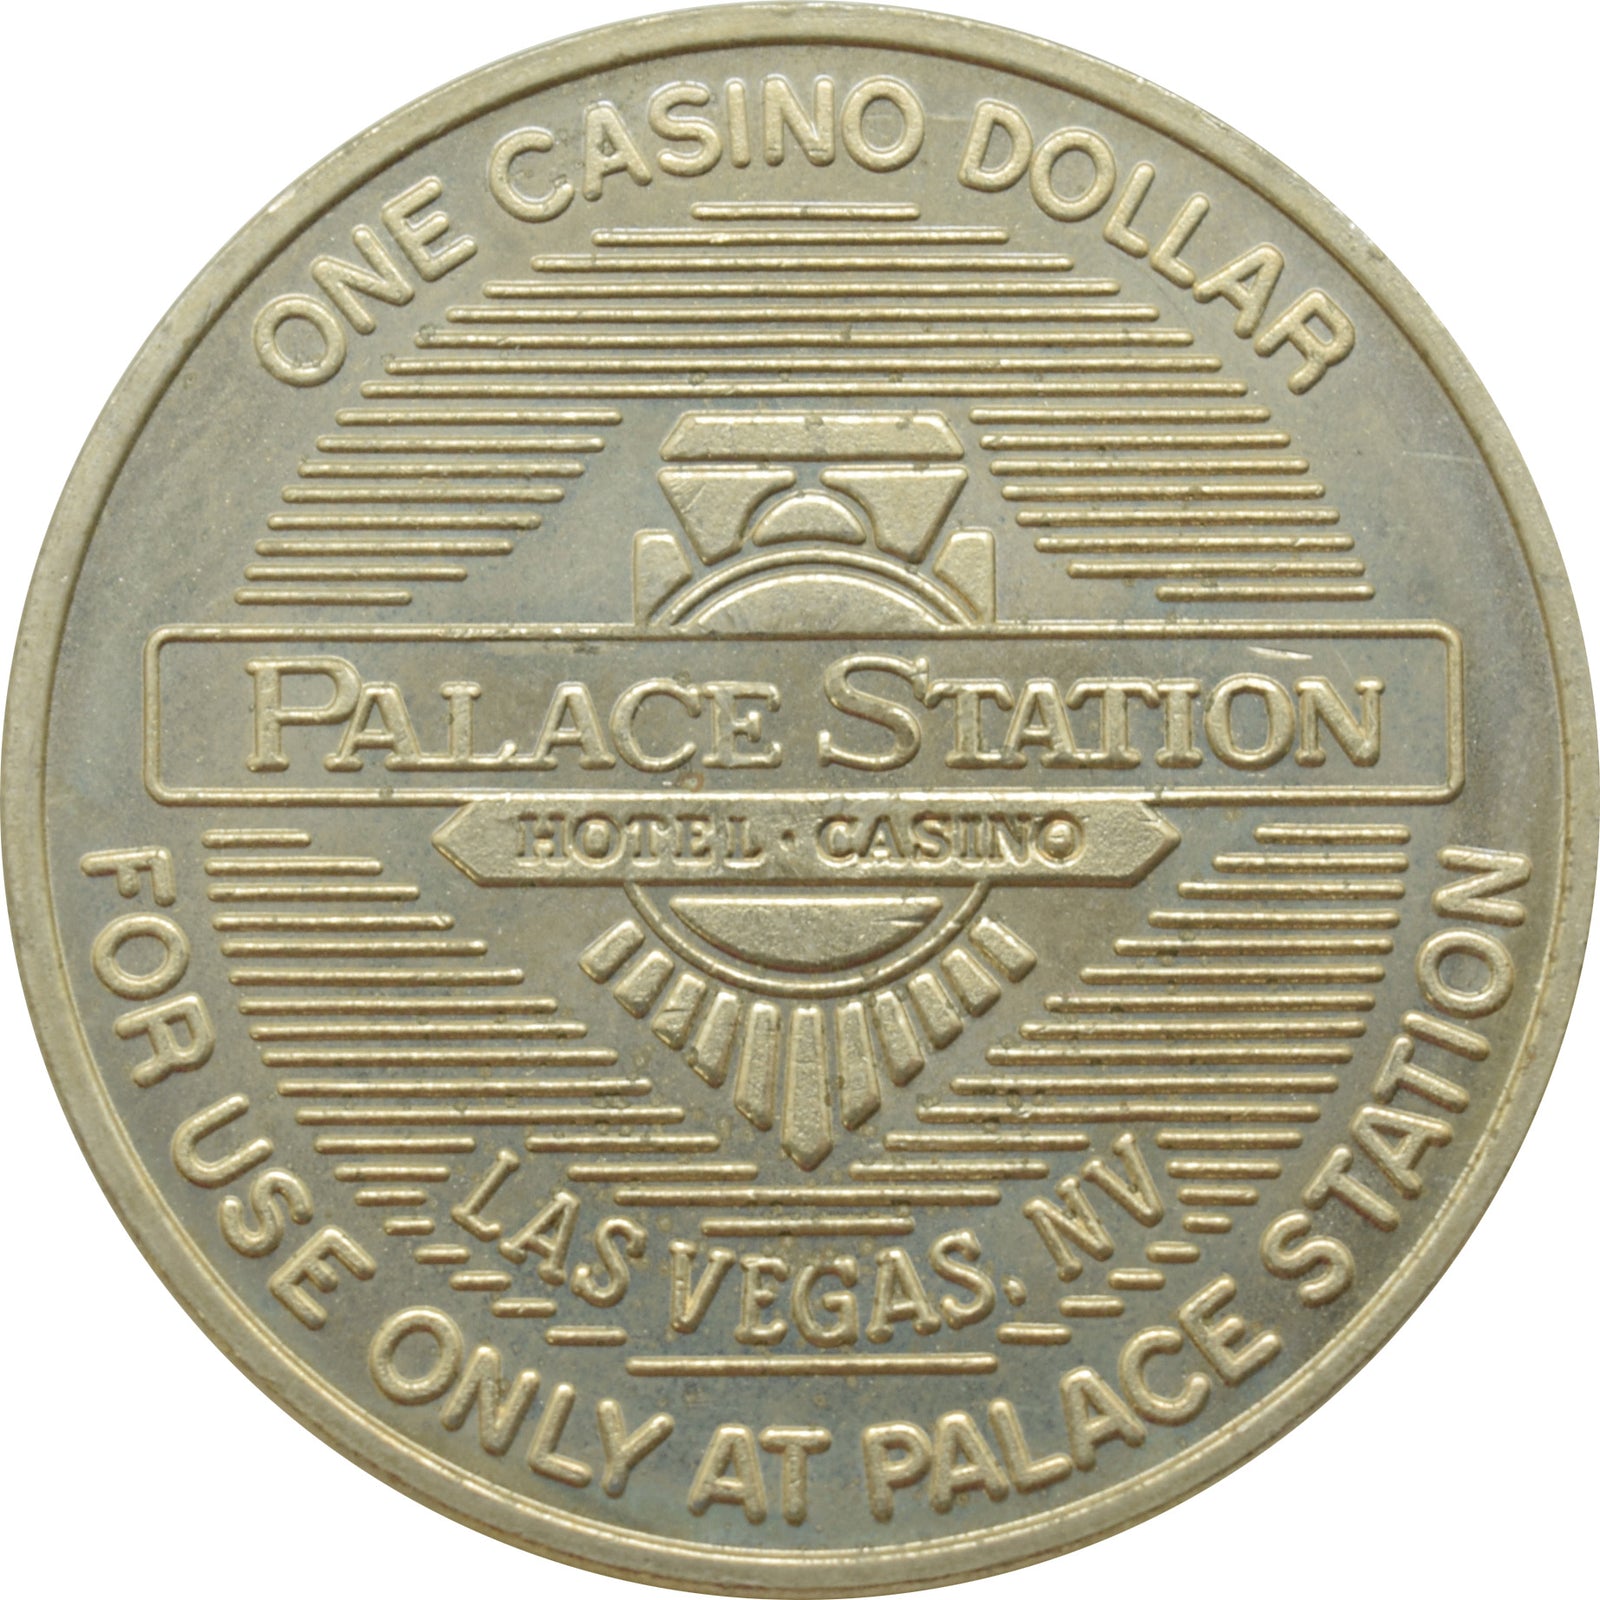 palace station casino address